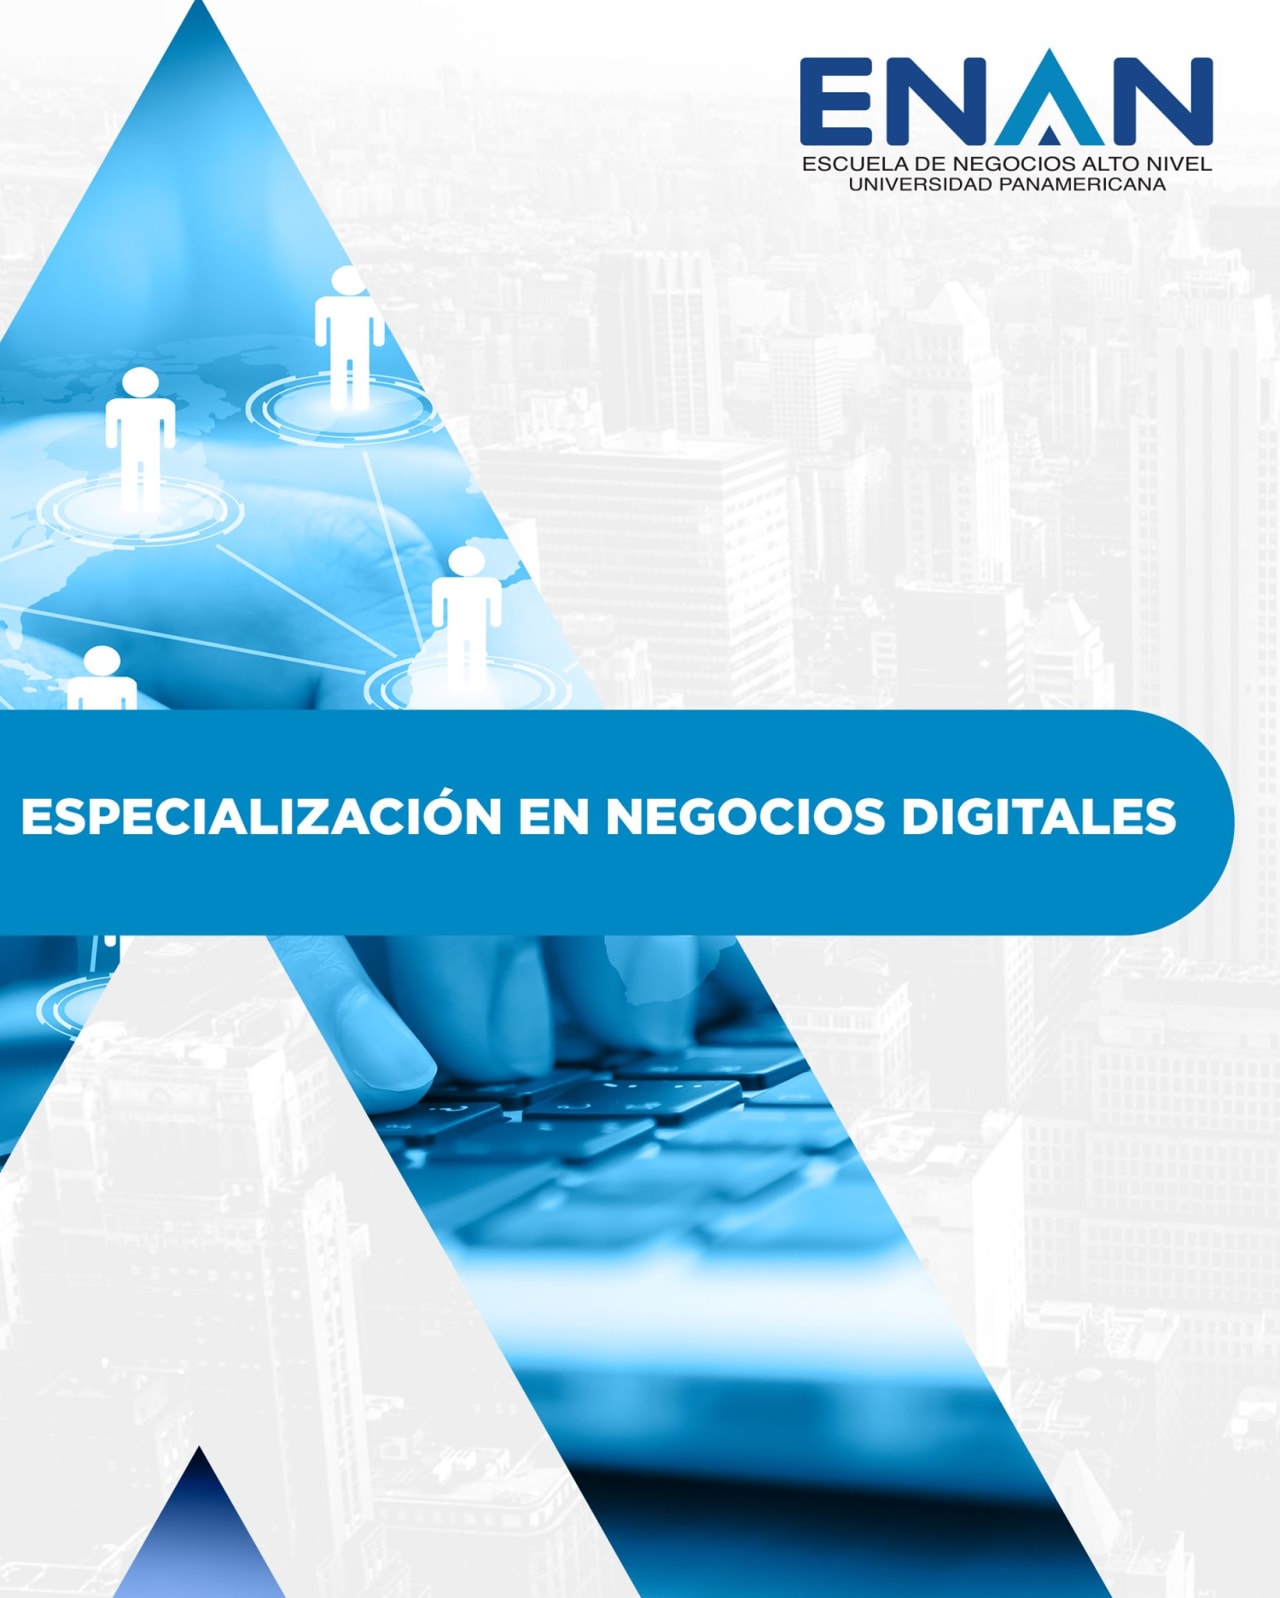 Escuela de Negocios Alto Nivel - Universidad Panamericana de Guatemala 디지털 비즈니스 전문화